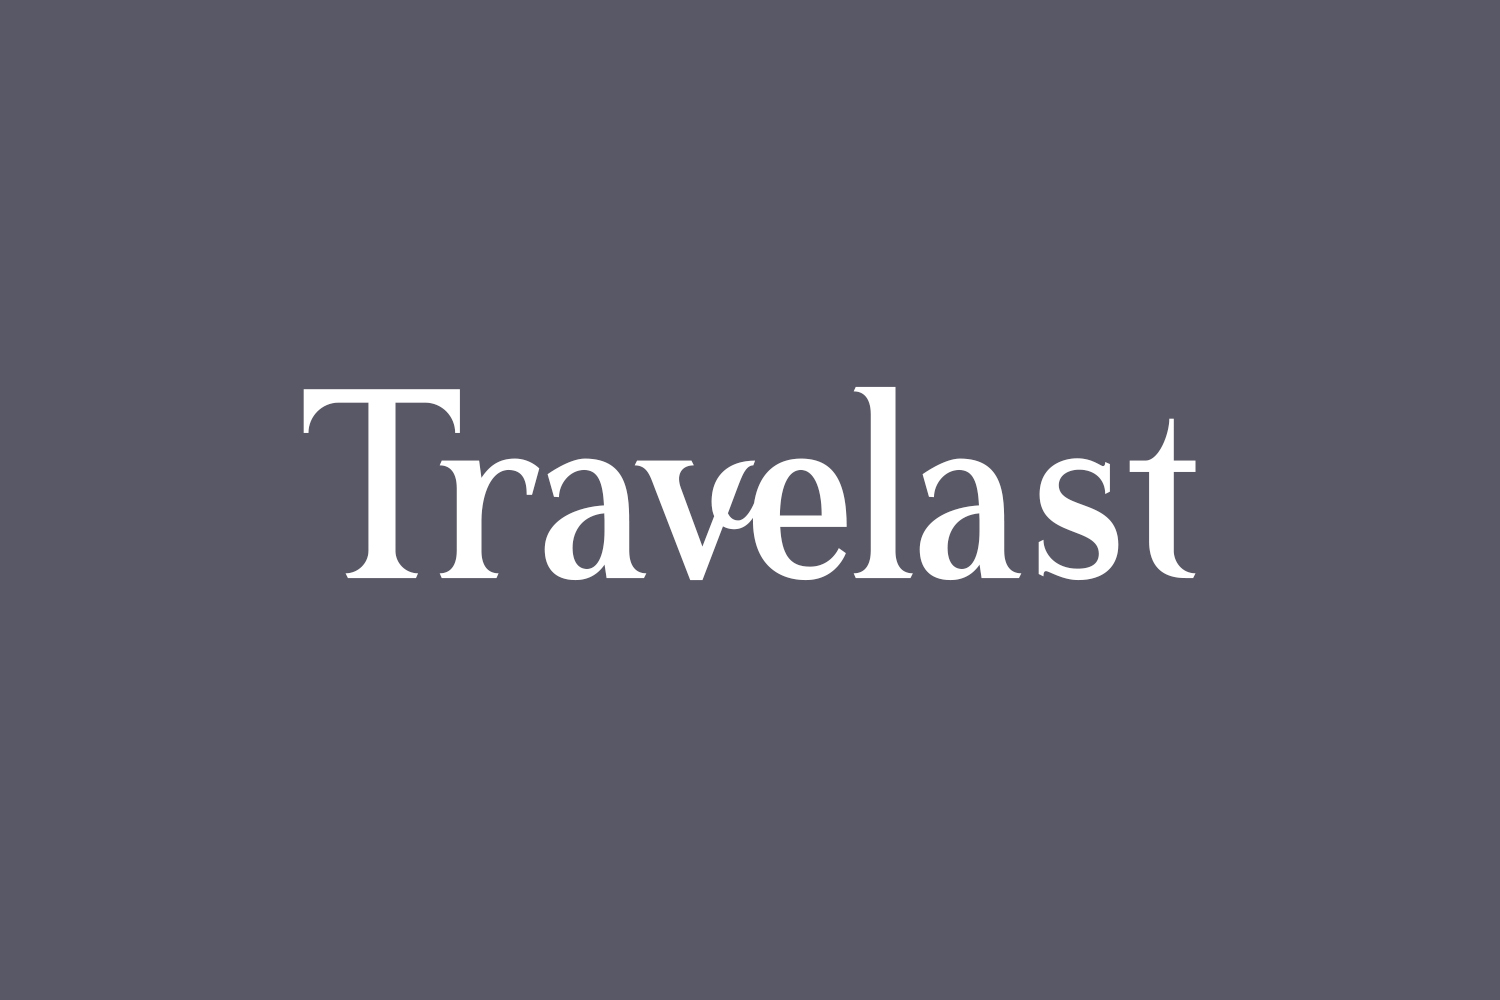 Travelast Free Font